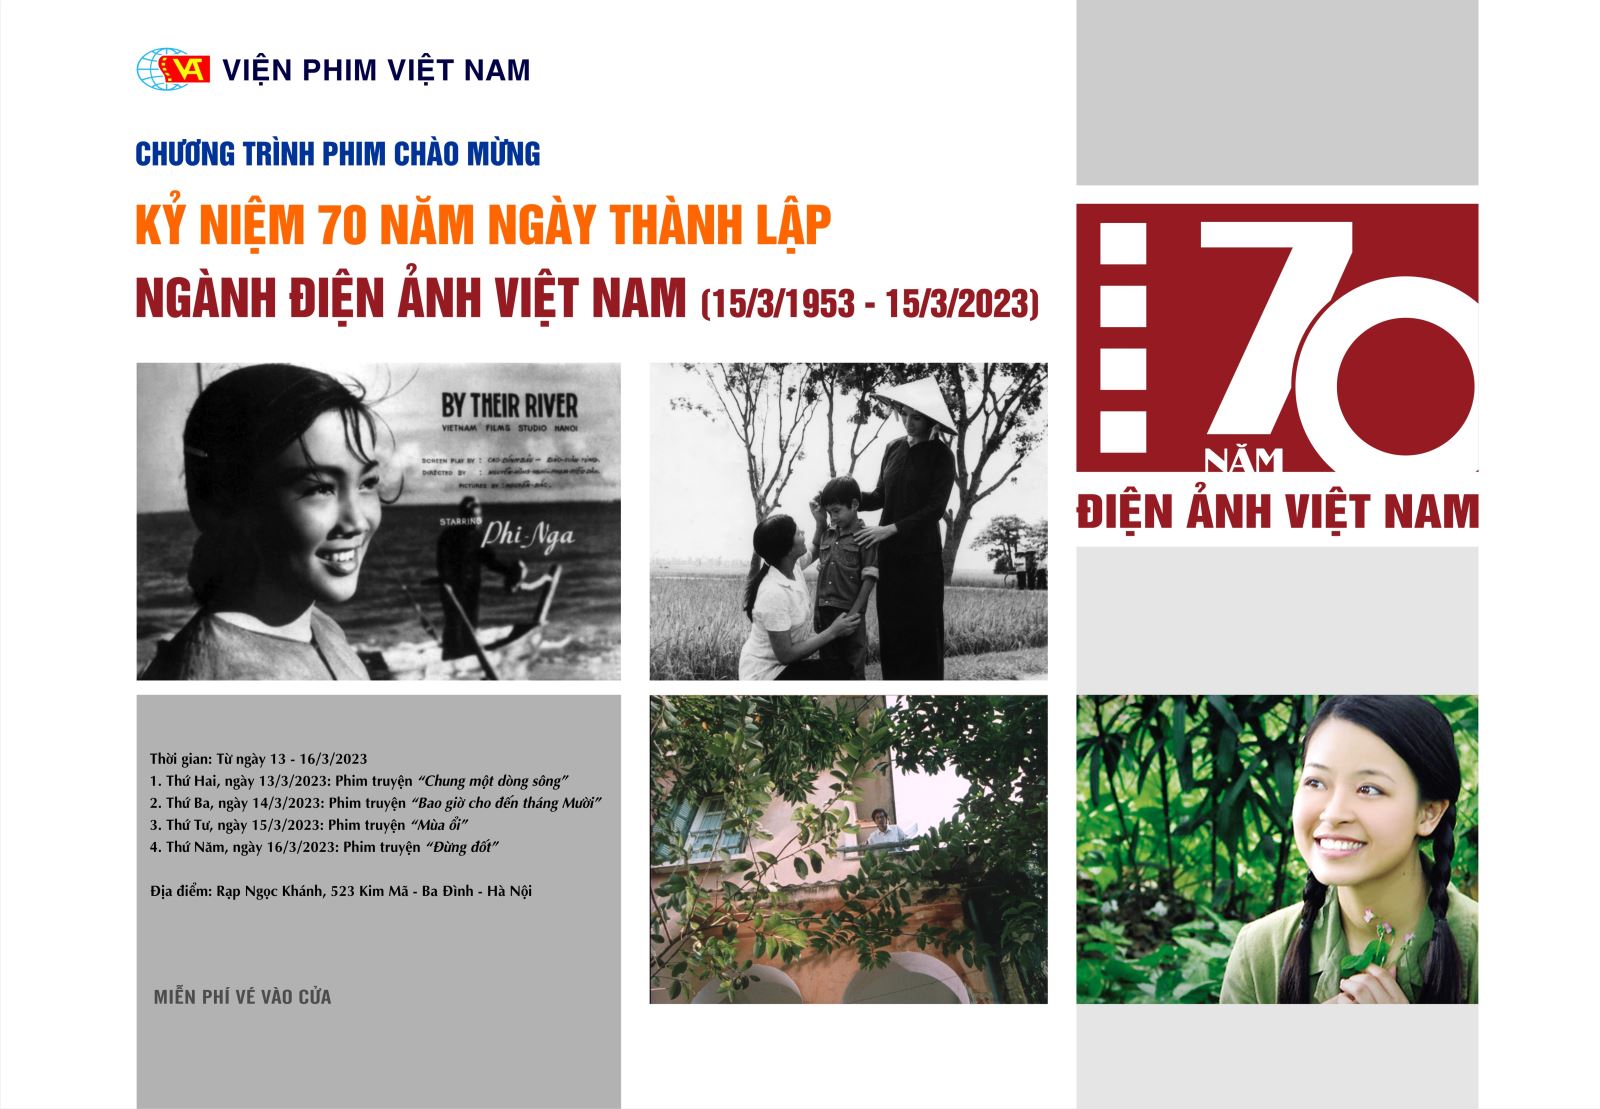 Viện Phim Việt Nam tổ chức các hoạt động kỷ niệm ngày thành lập ngành điện ảnh